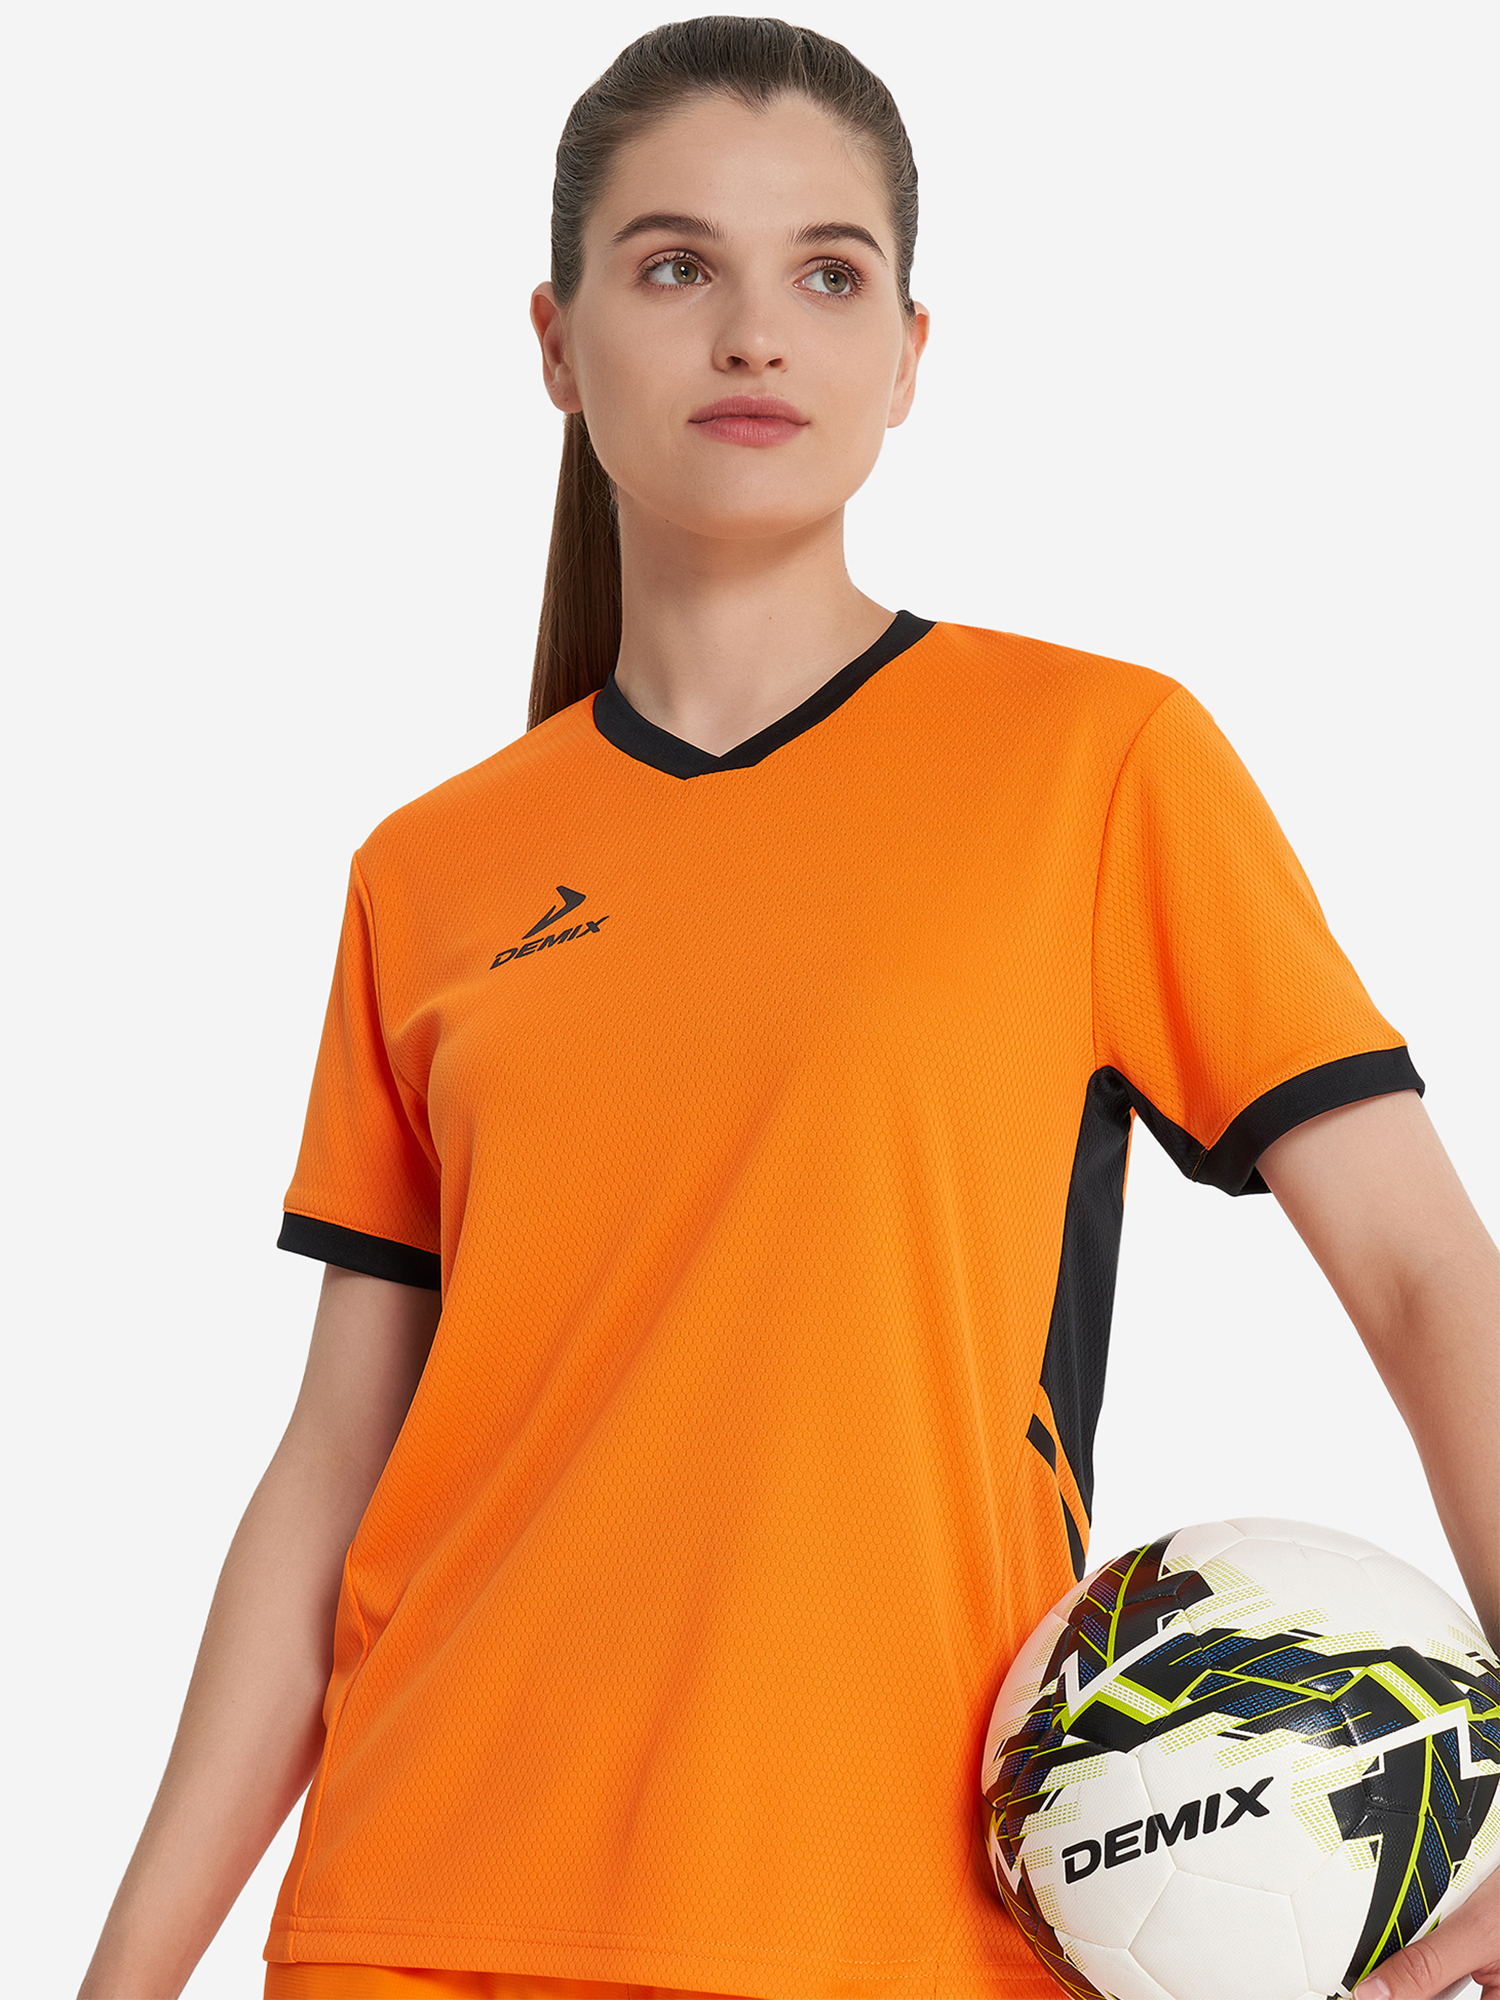 Футболка женская Demix Pace, Оранжевый